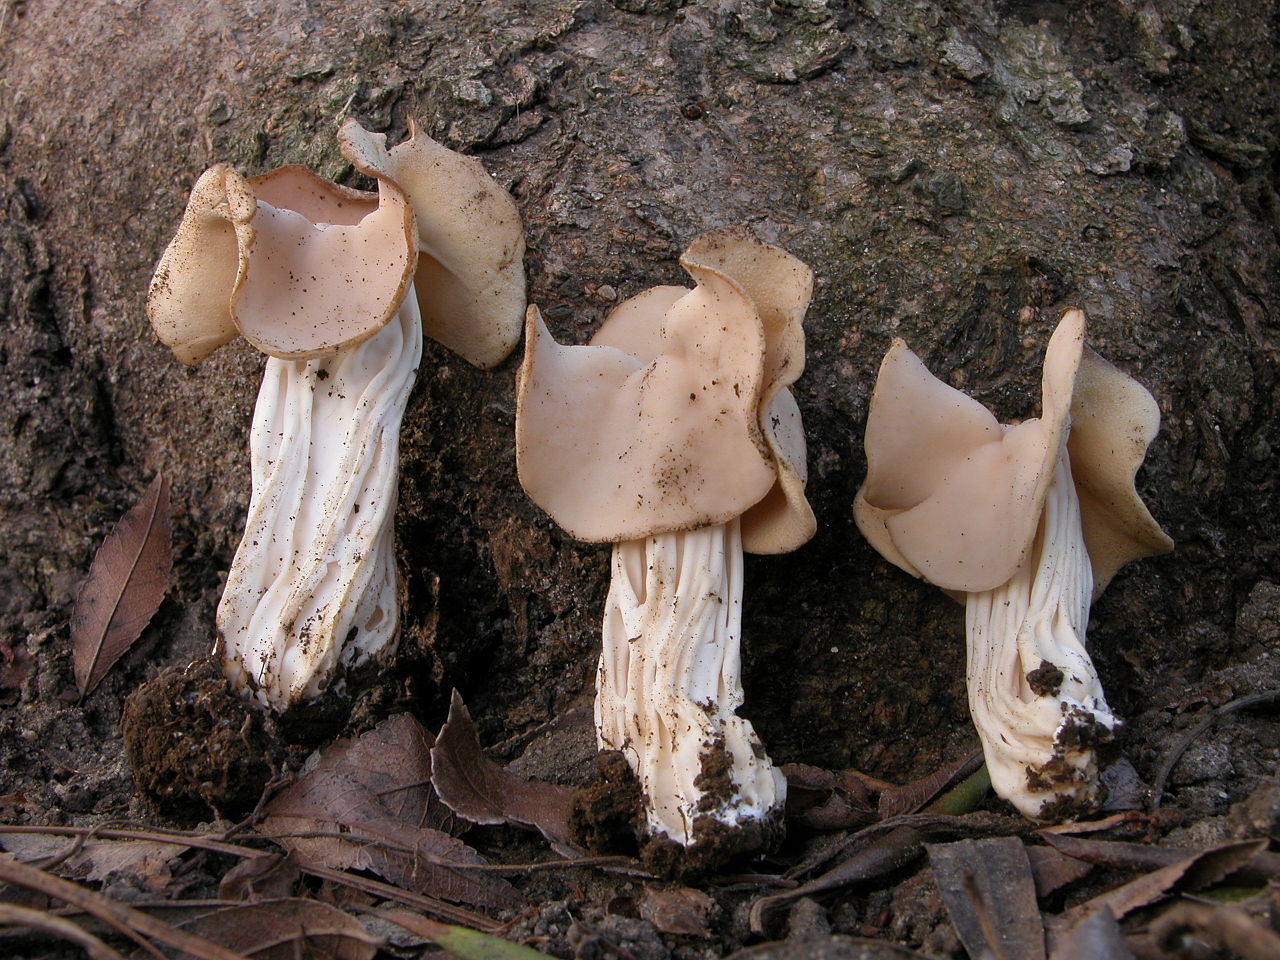 Подосиновик белоножковый  – описание гриба. полезные свойства. где растет.